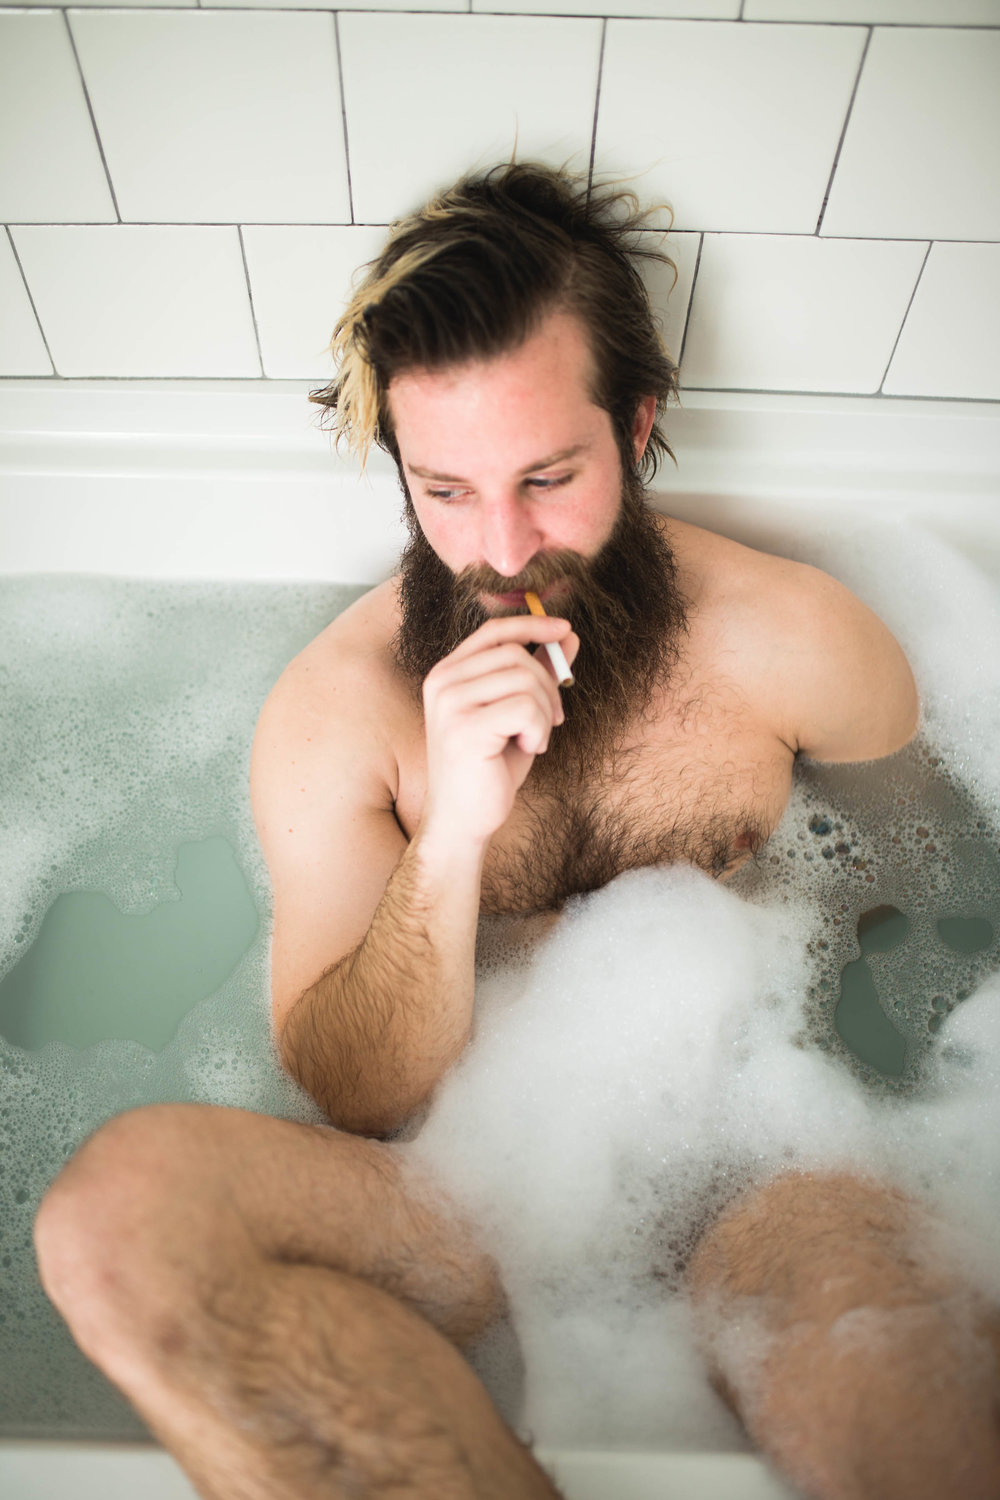 oklahoma boudoir photographer, okc boudoir photography, male boudoir, dudoir, sexy male photos, bathtub photos, bearded guy in bathtub, beard, hairy boy, cigarettes in bathtub, sexy